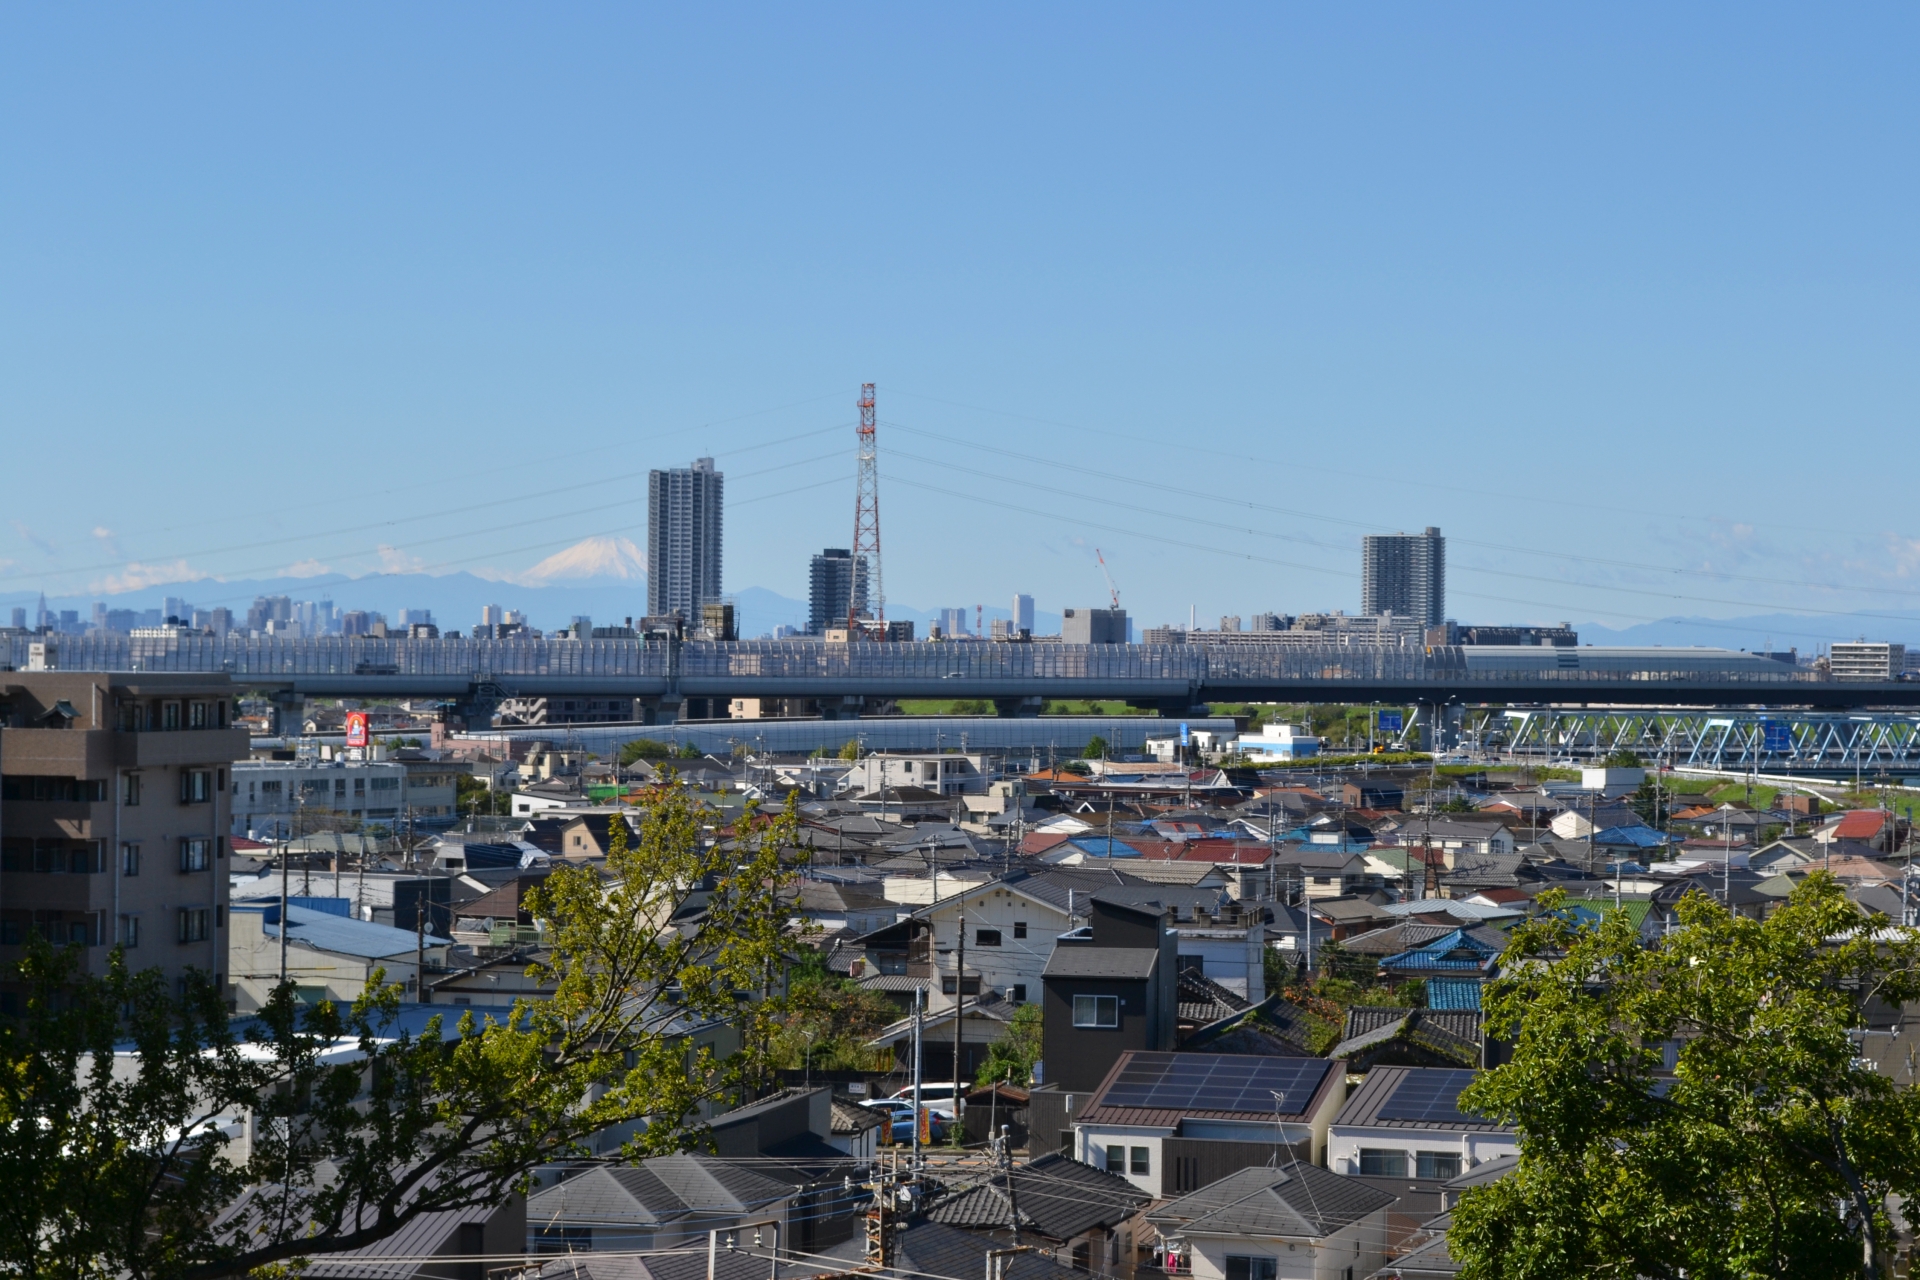 首都圏の住宅都市として発展する松戸市。北小金駅は市内にある駅のひとつで、南口で大規模な再開発が始まることになった。画像は松戸市のまち並み。